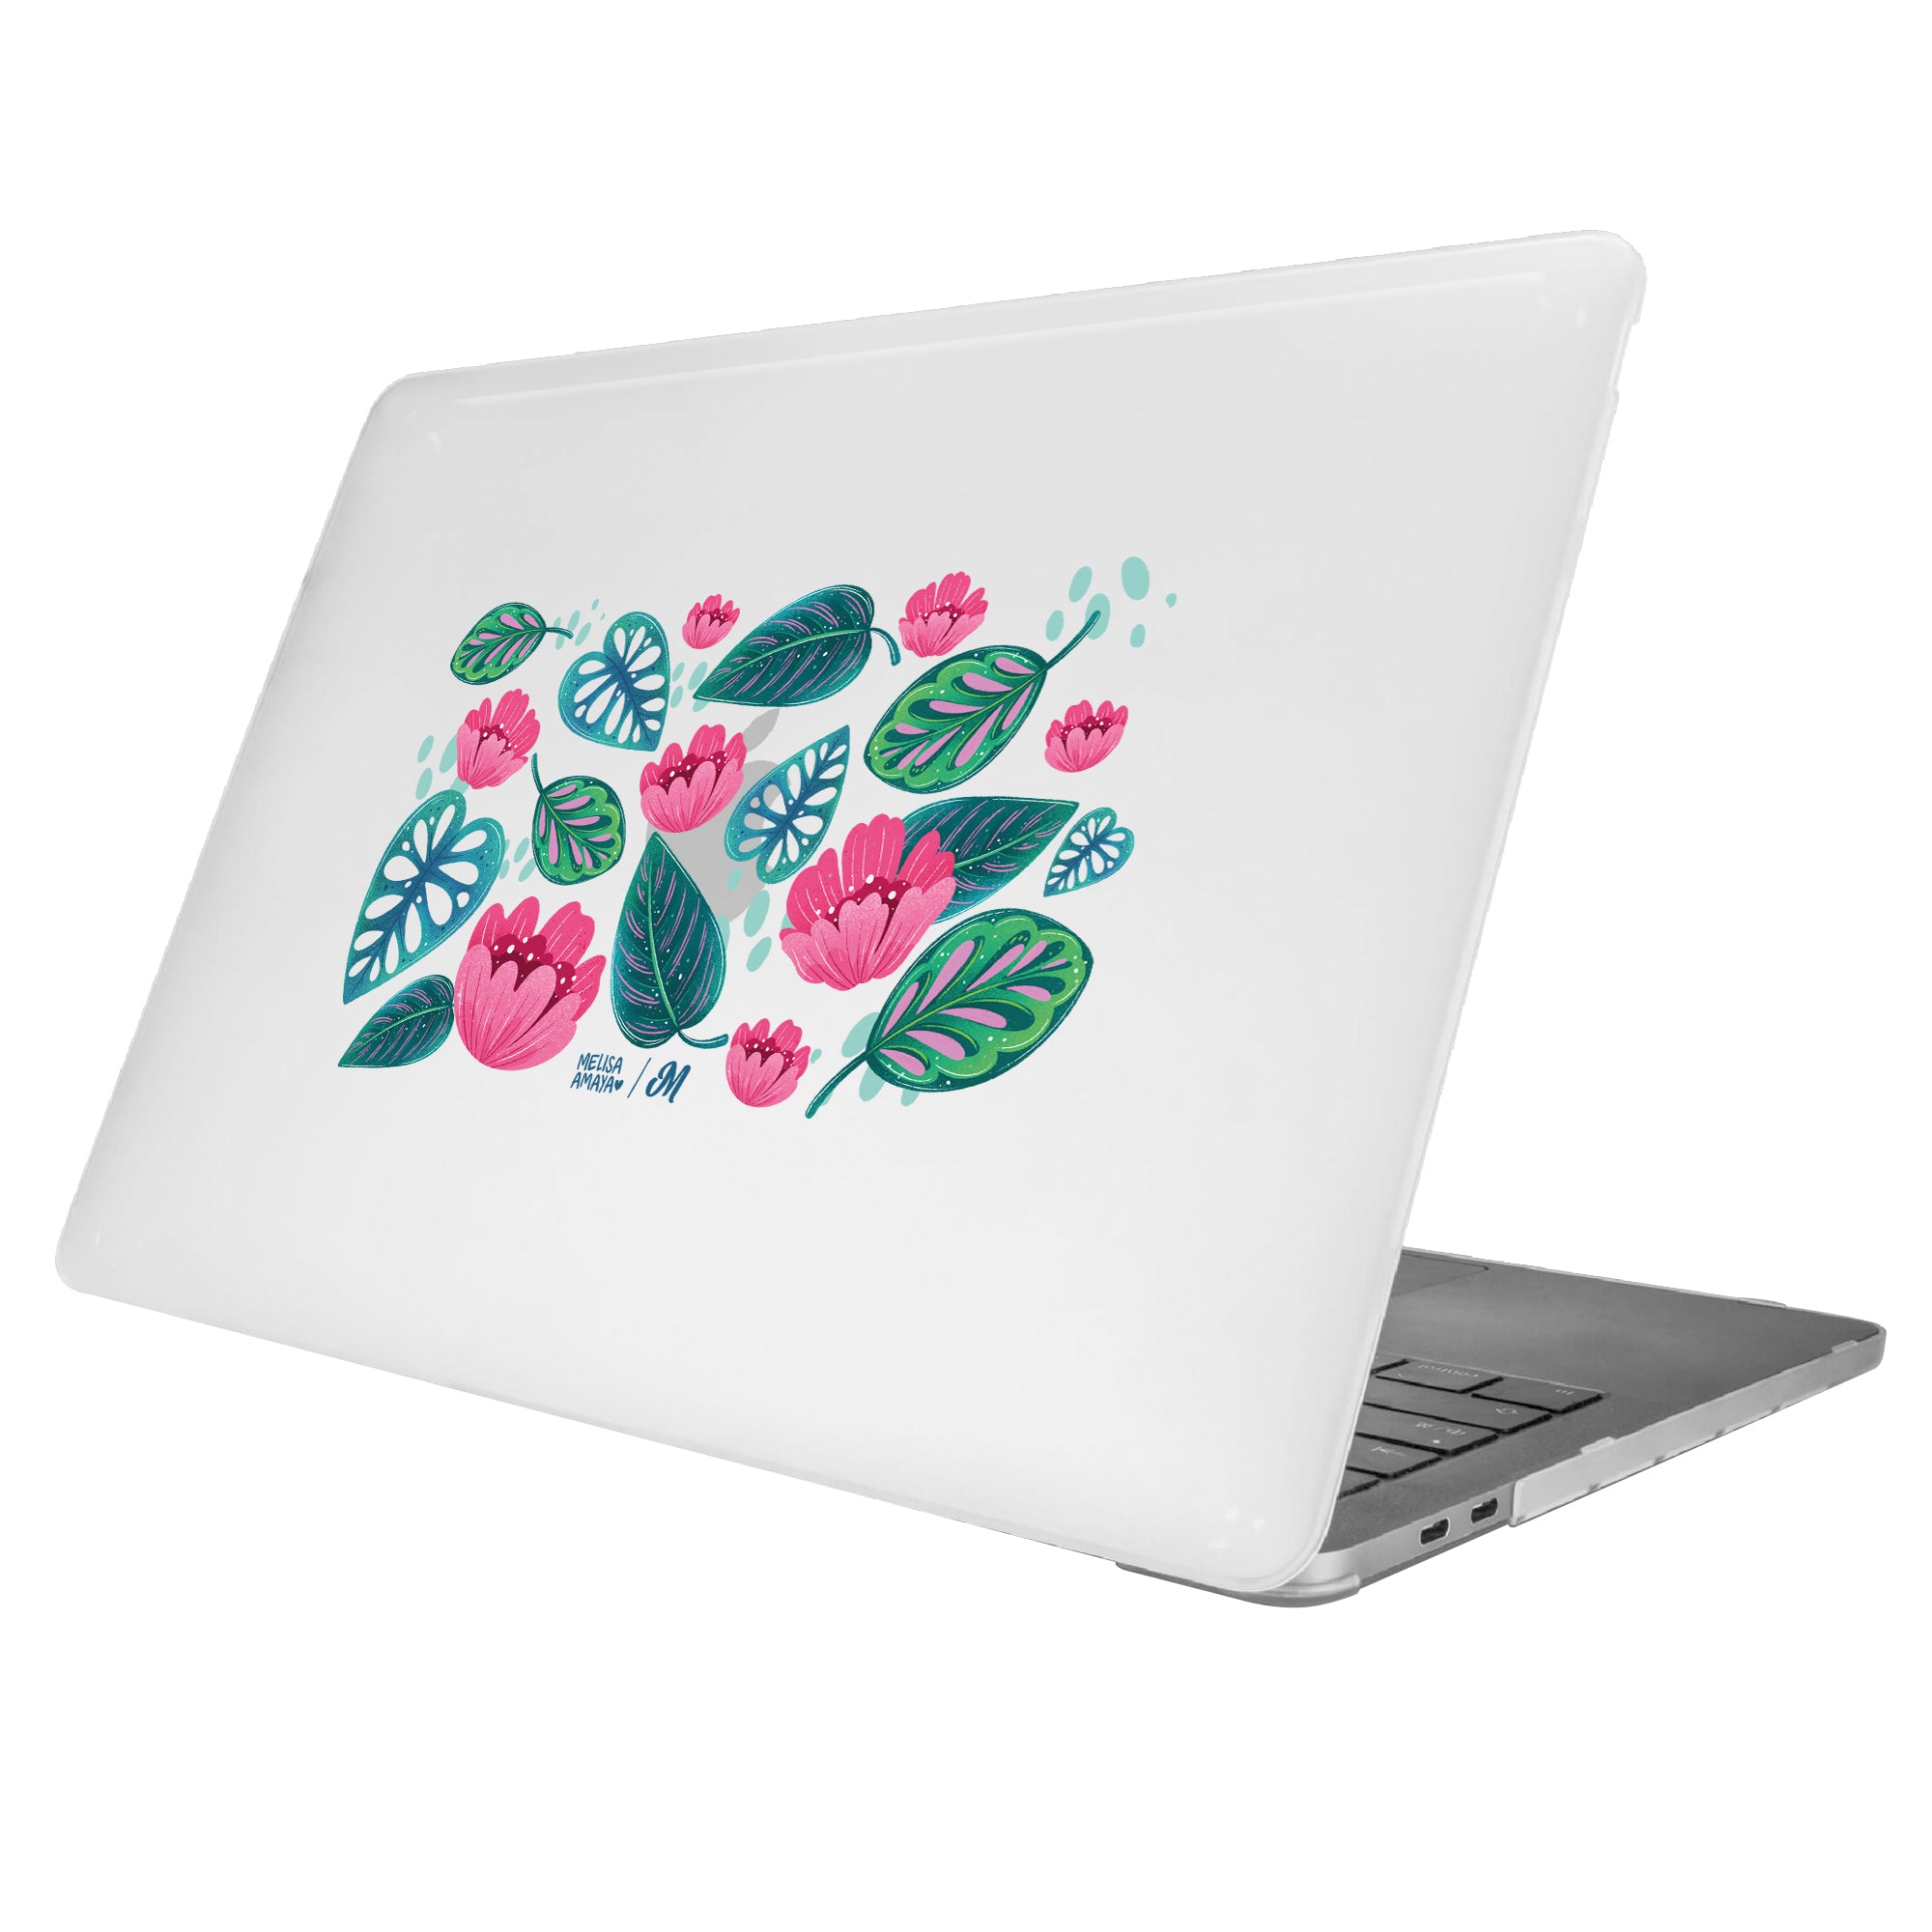 Hojas de Jardín MacBook Case - Mandala Cases